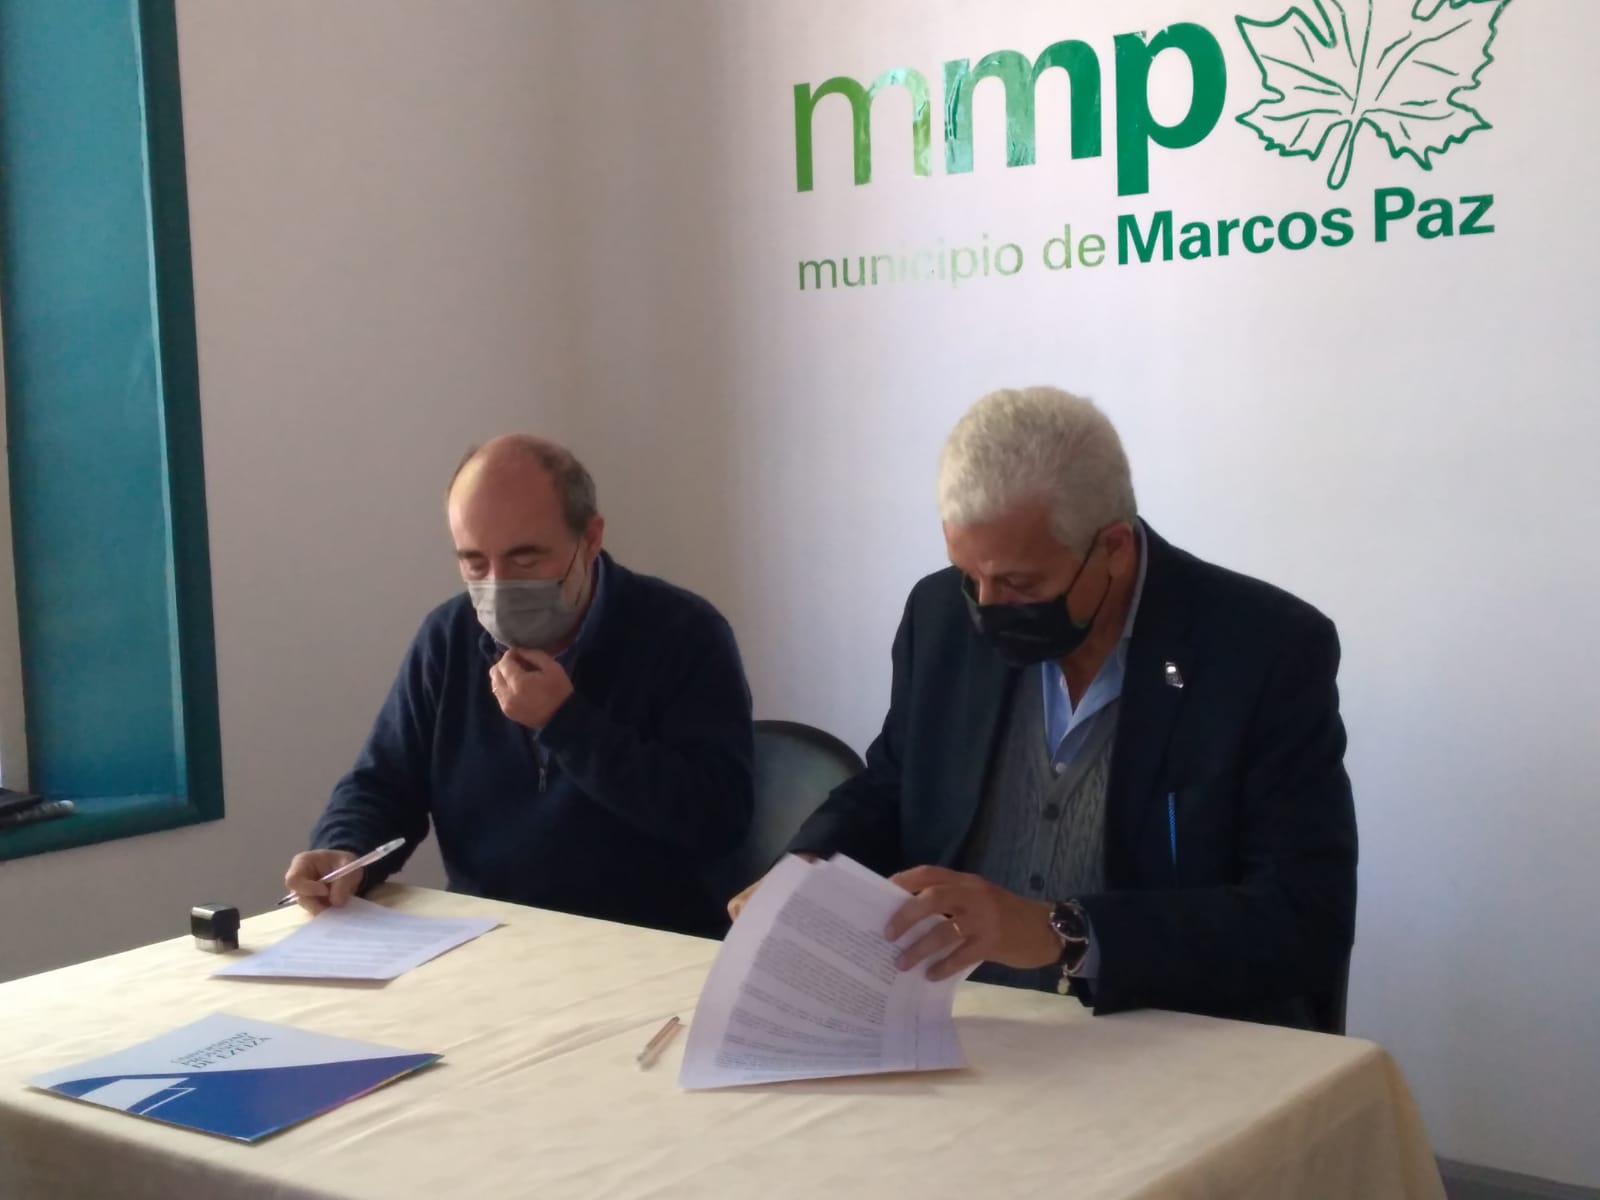 UPE firmó convenio con el Municipio de Marcos Paz